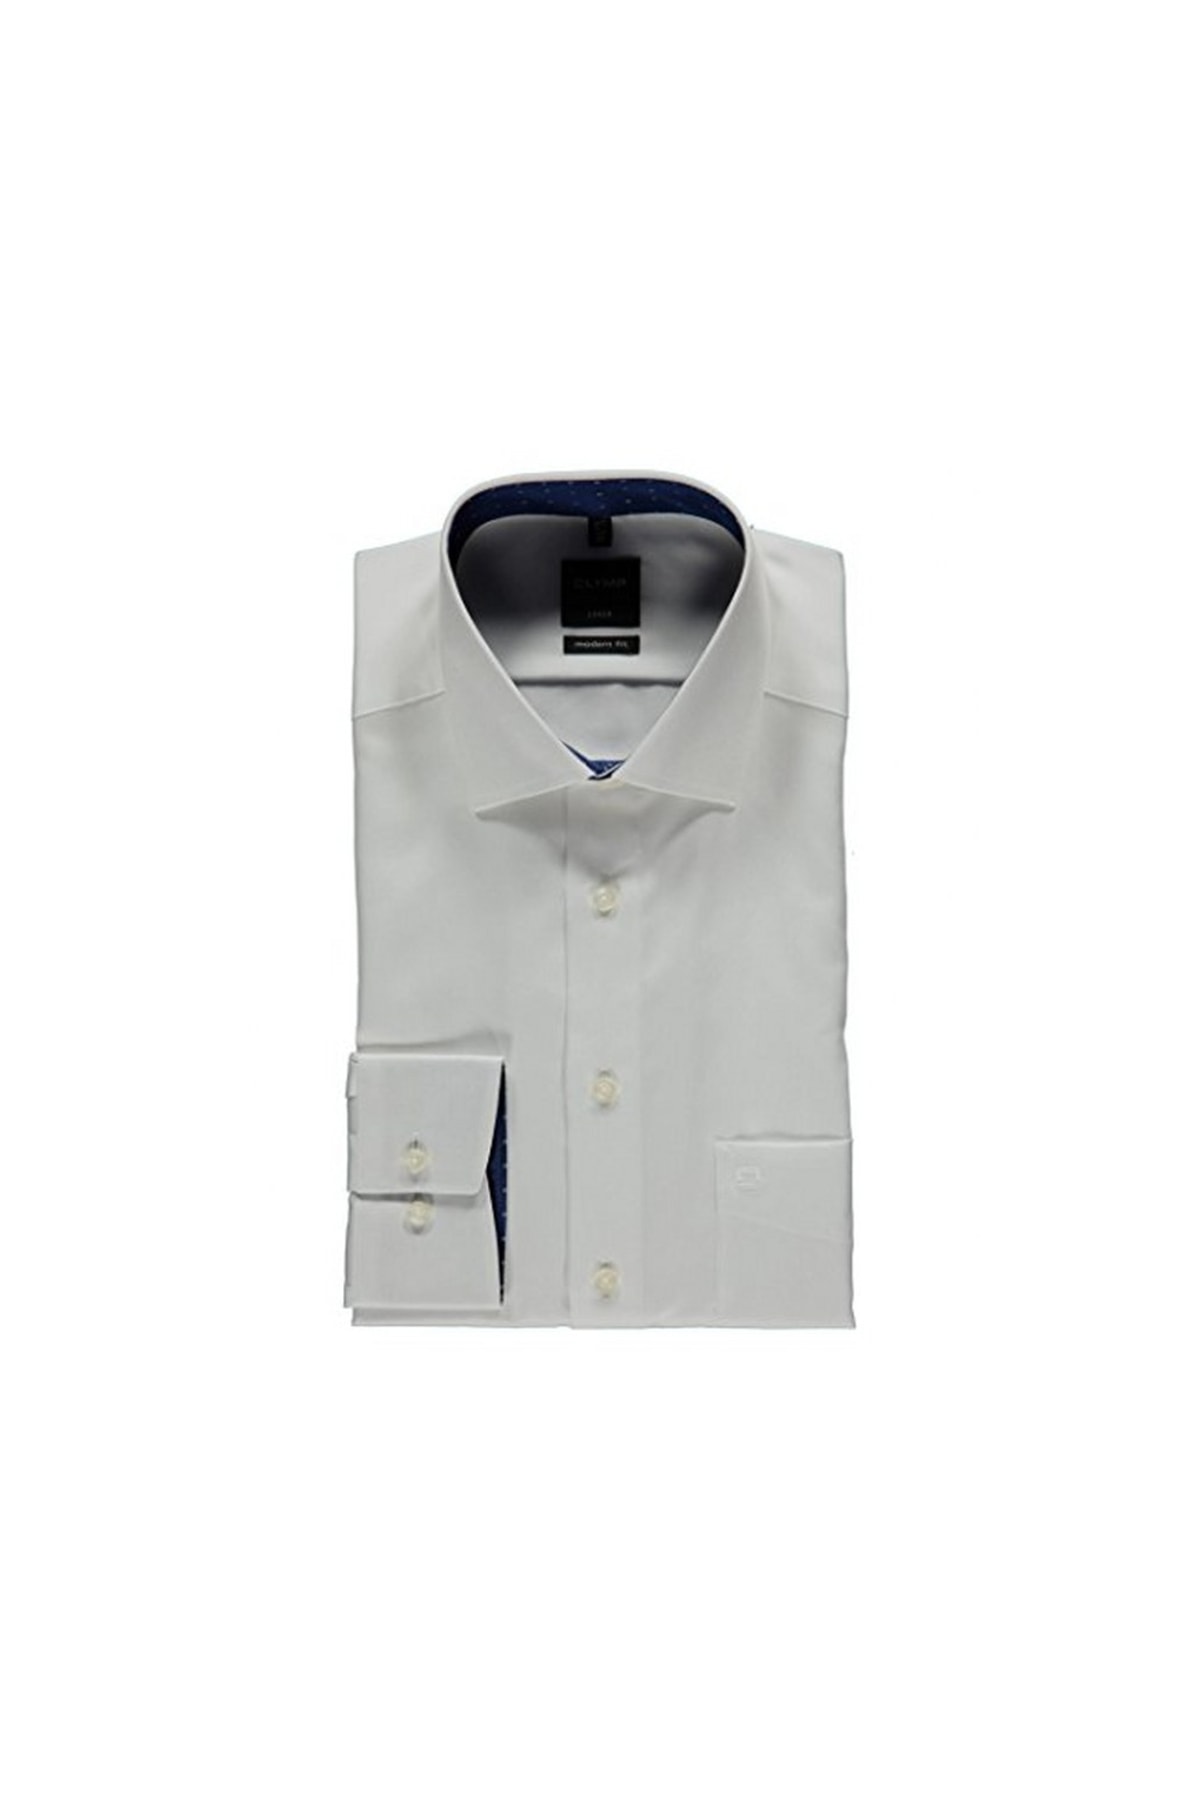 OLYMP Hemd Weiß Regular Fit Fast ausverkauft OB7566